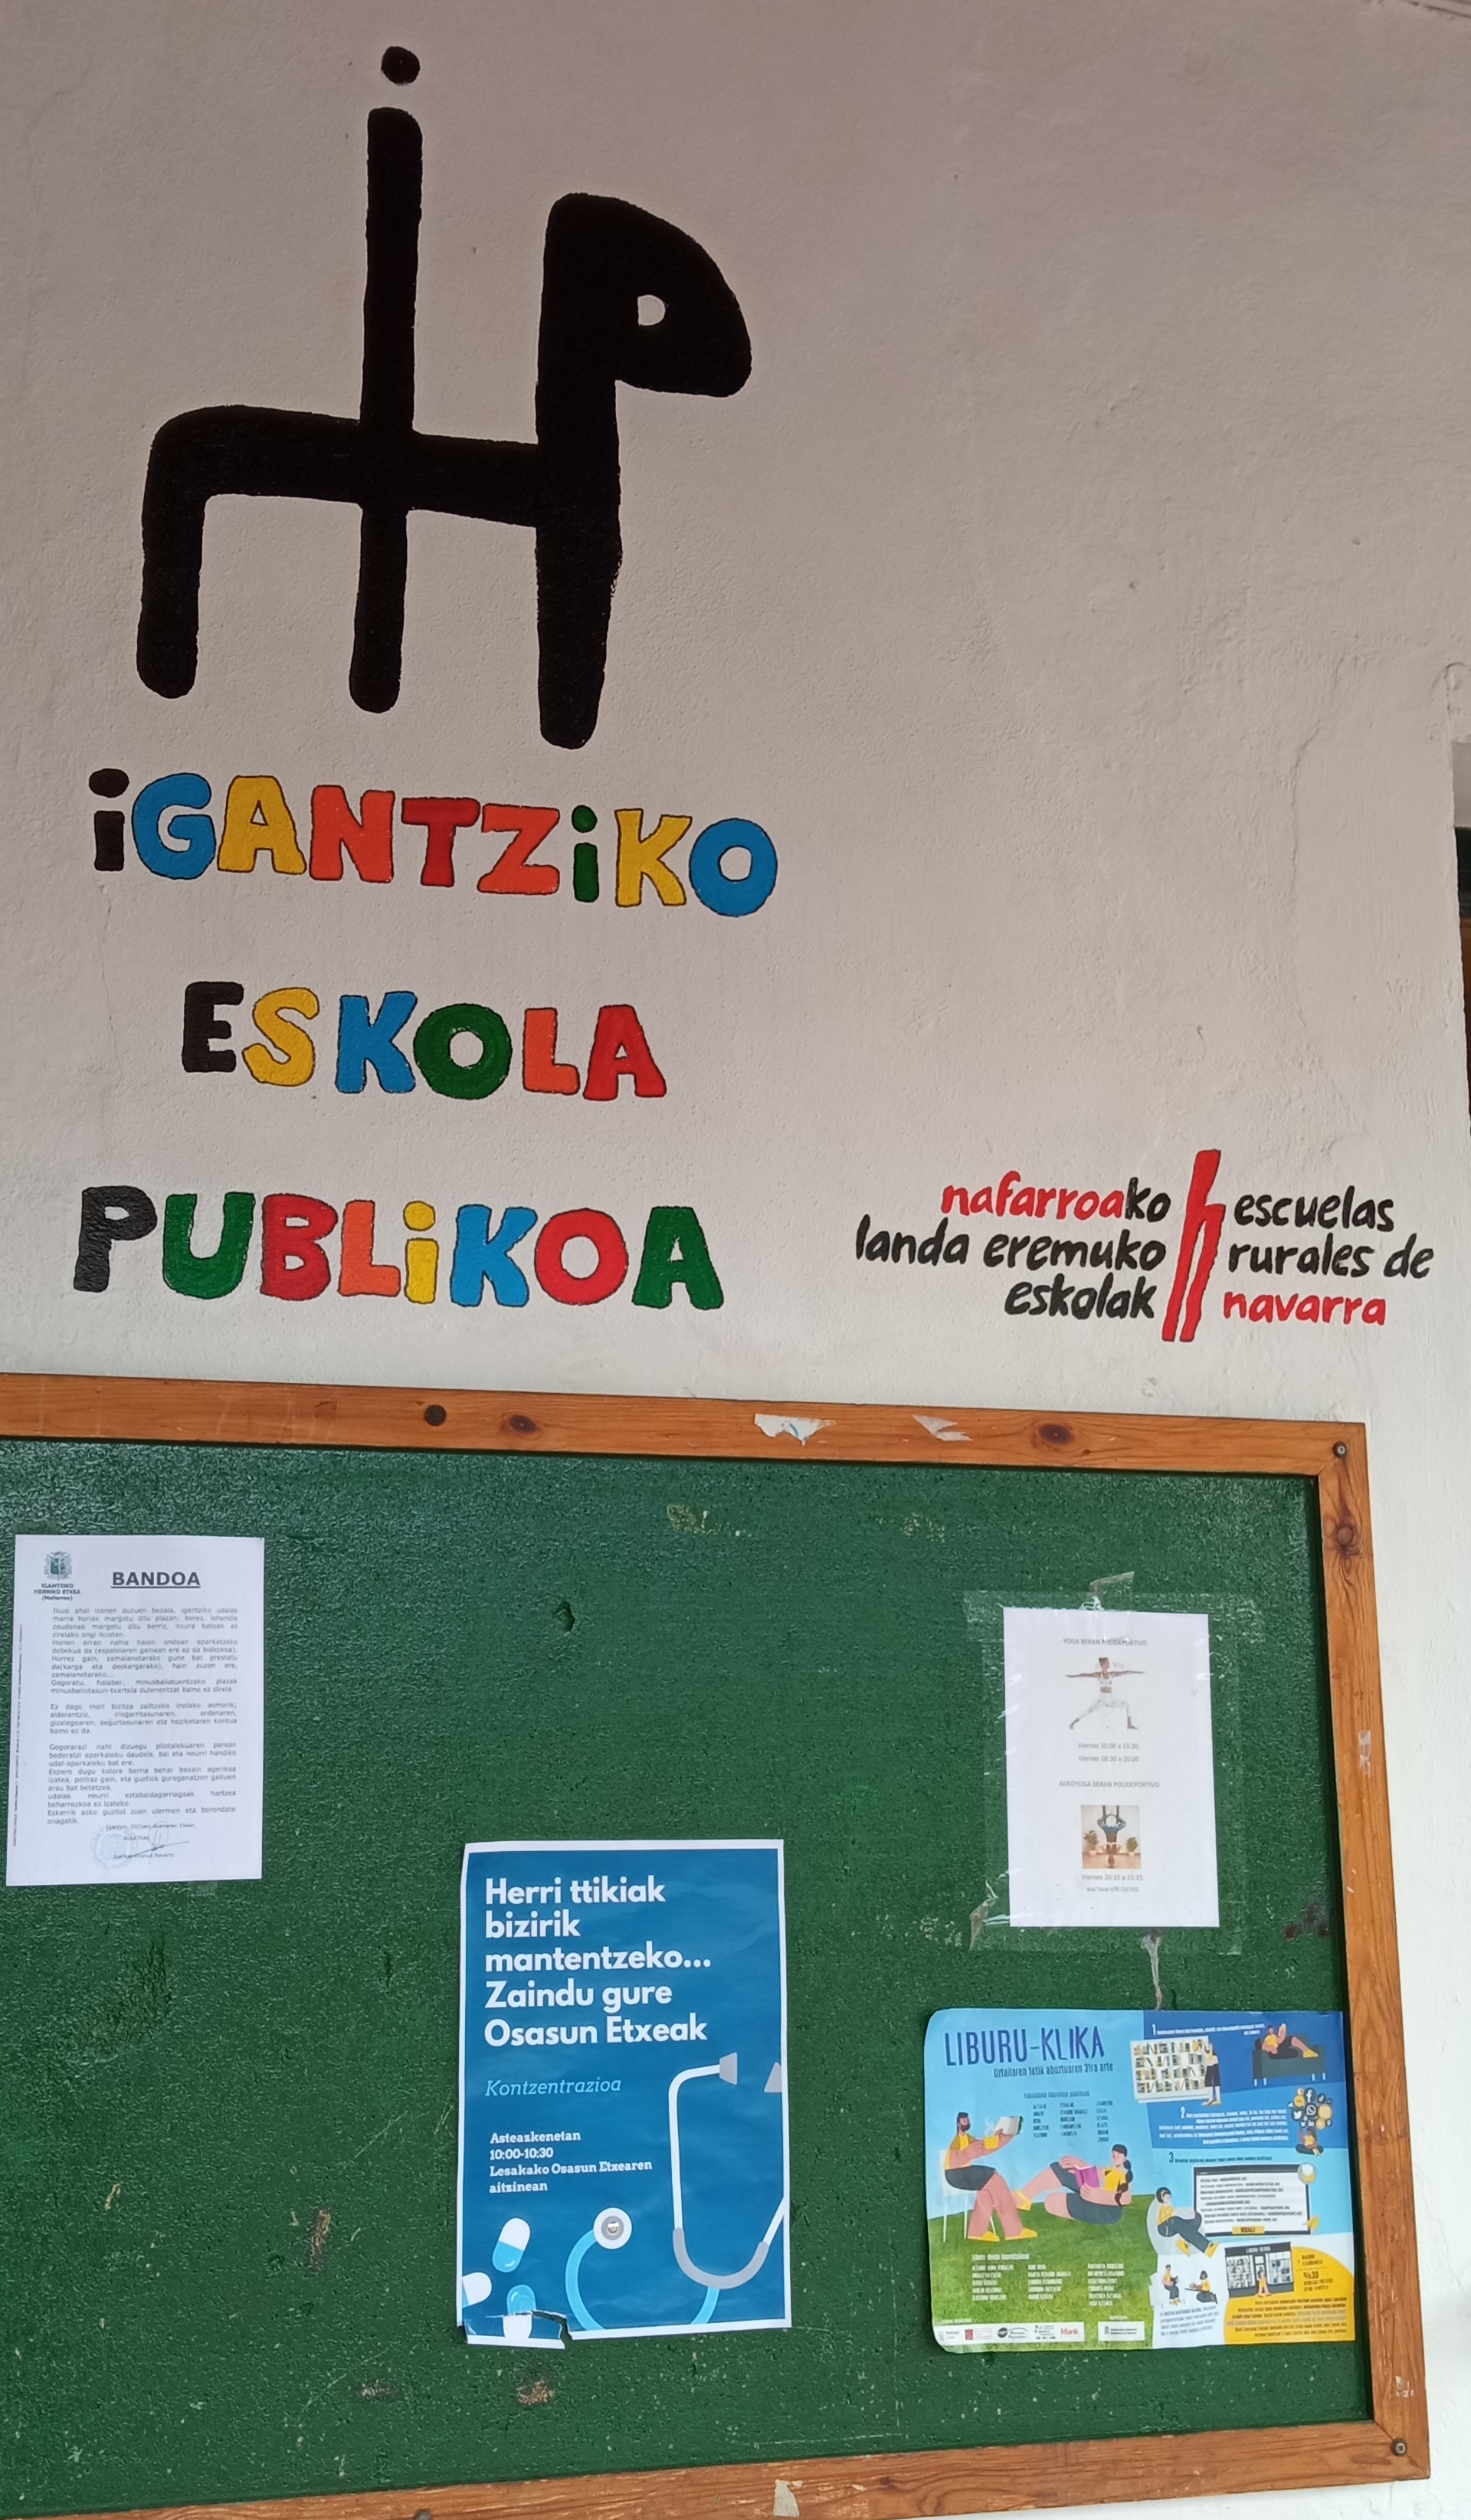 Logotipoa estreinatu du Igantziko eskolako komunitateak